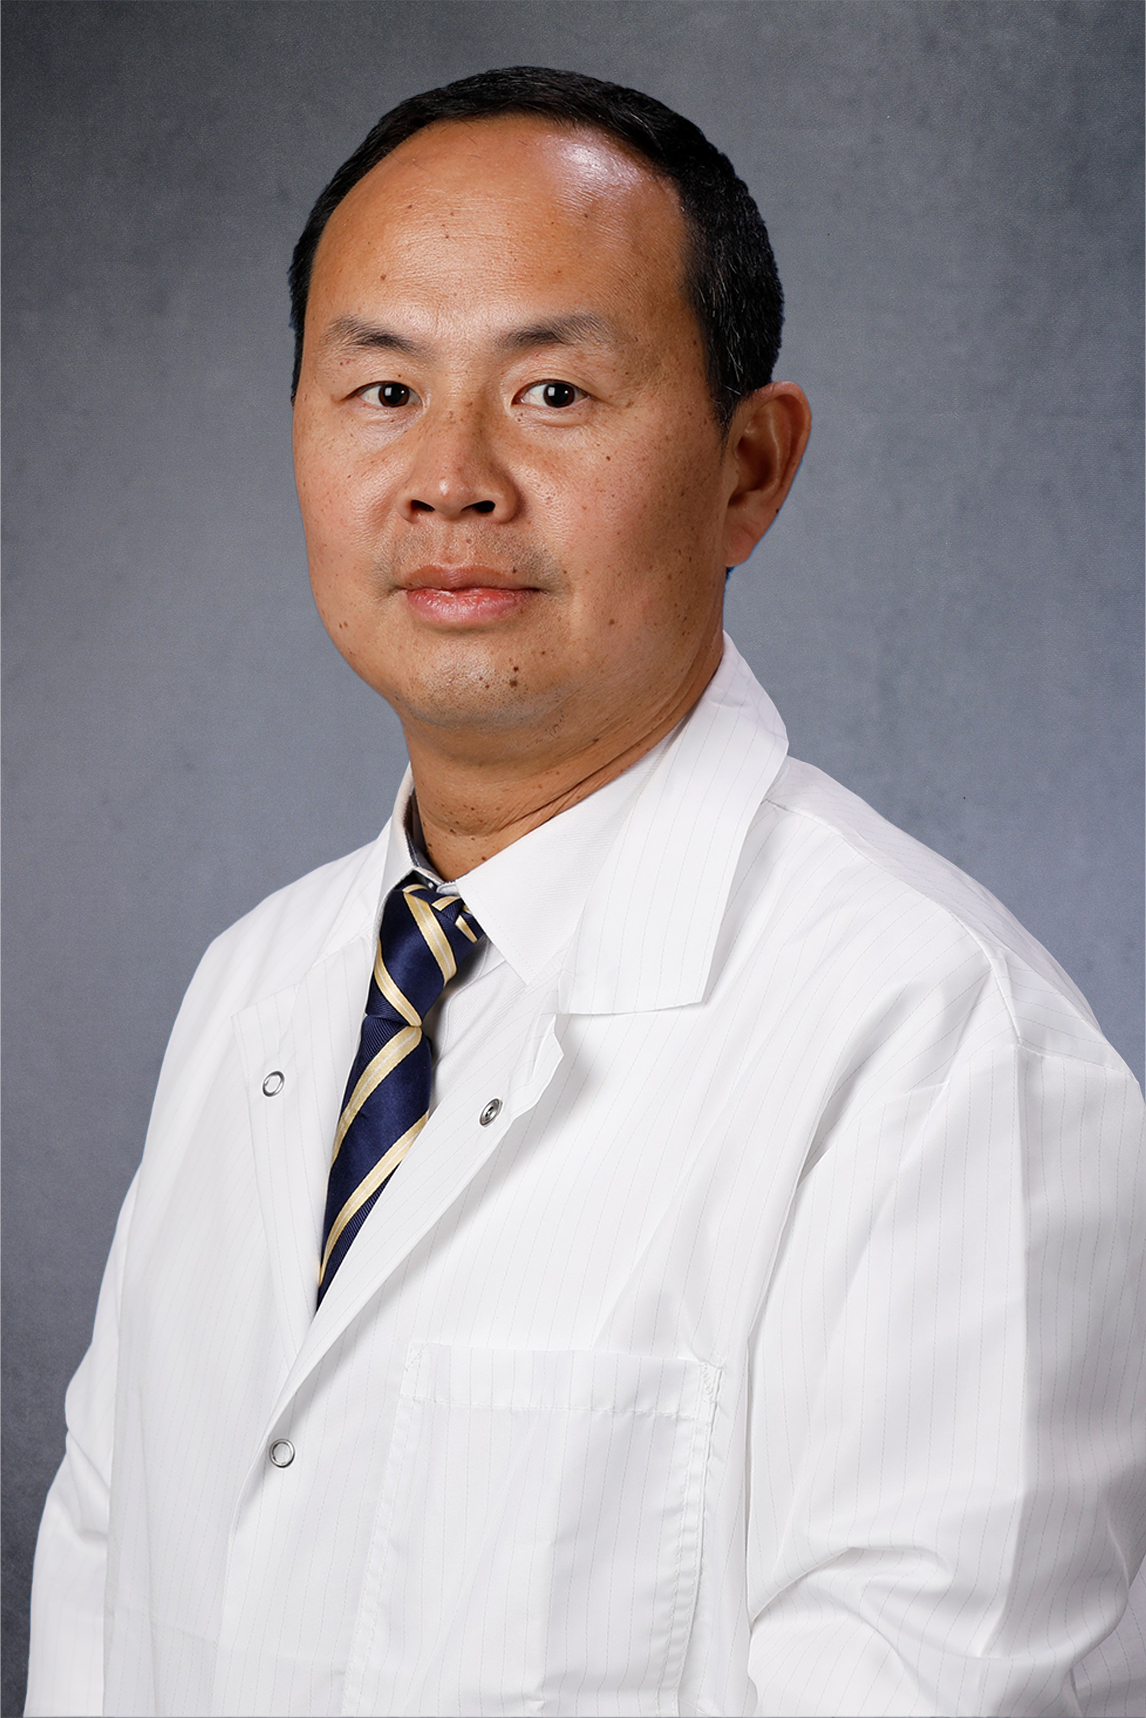 Liangzhong (Shawn) Xiang, PhD